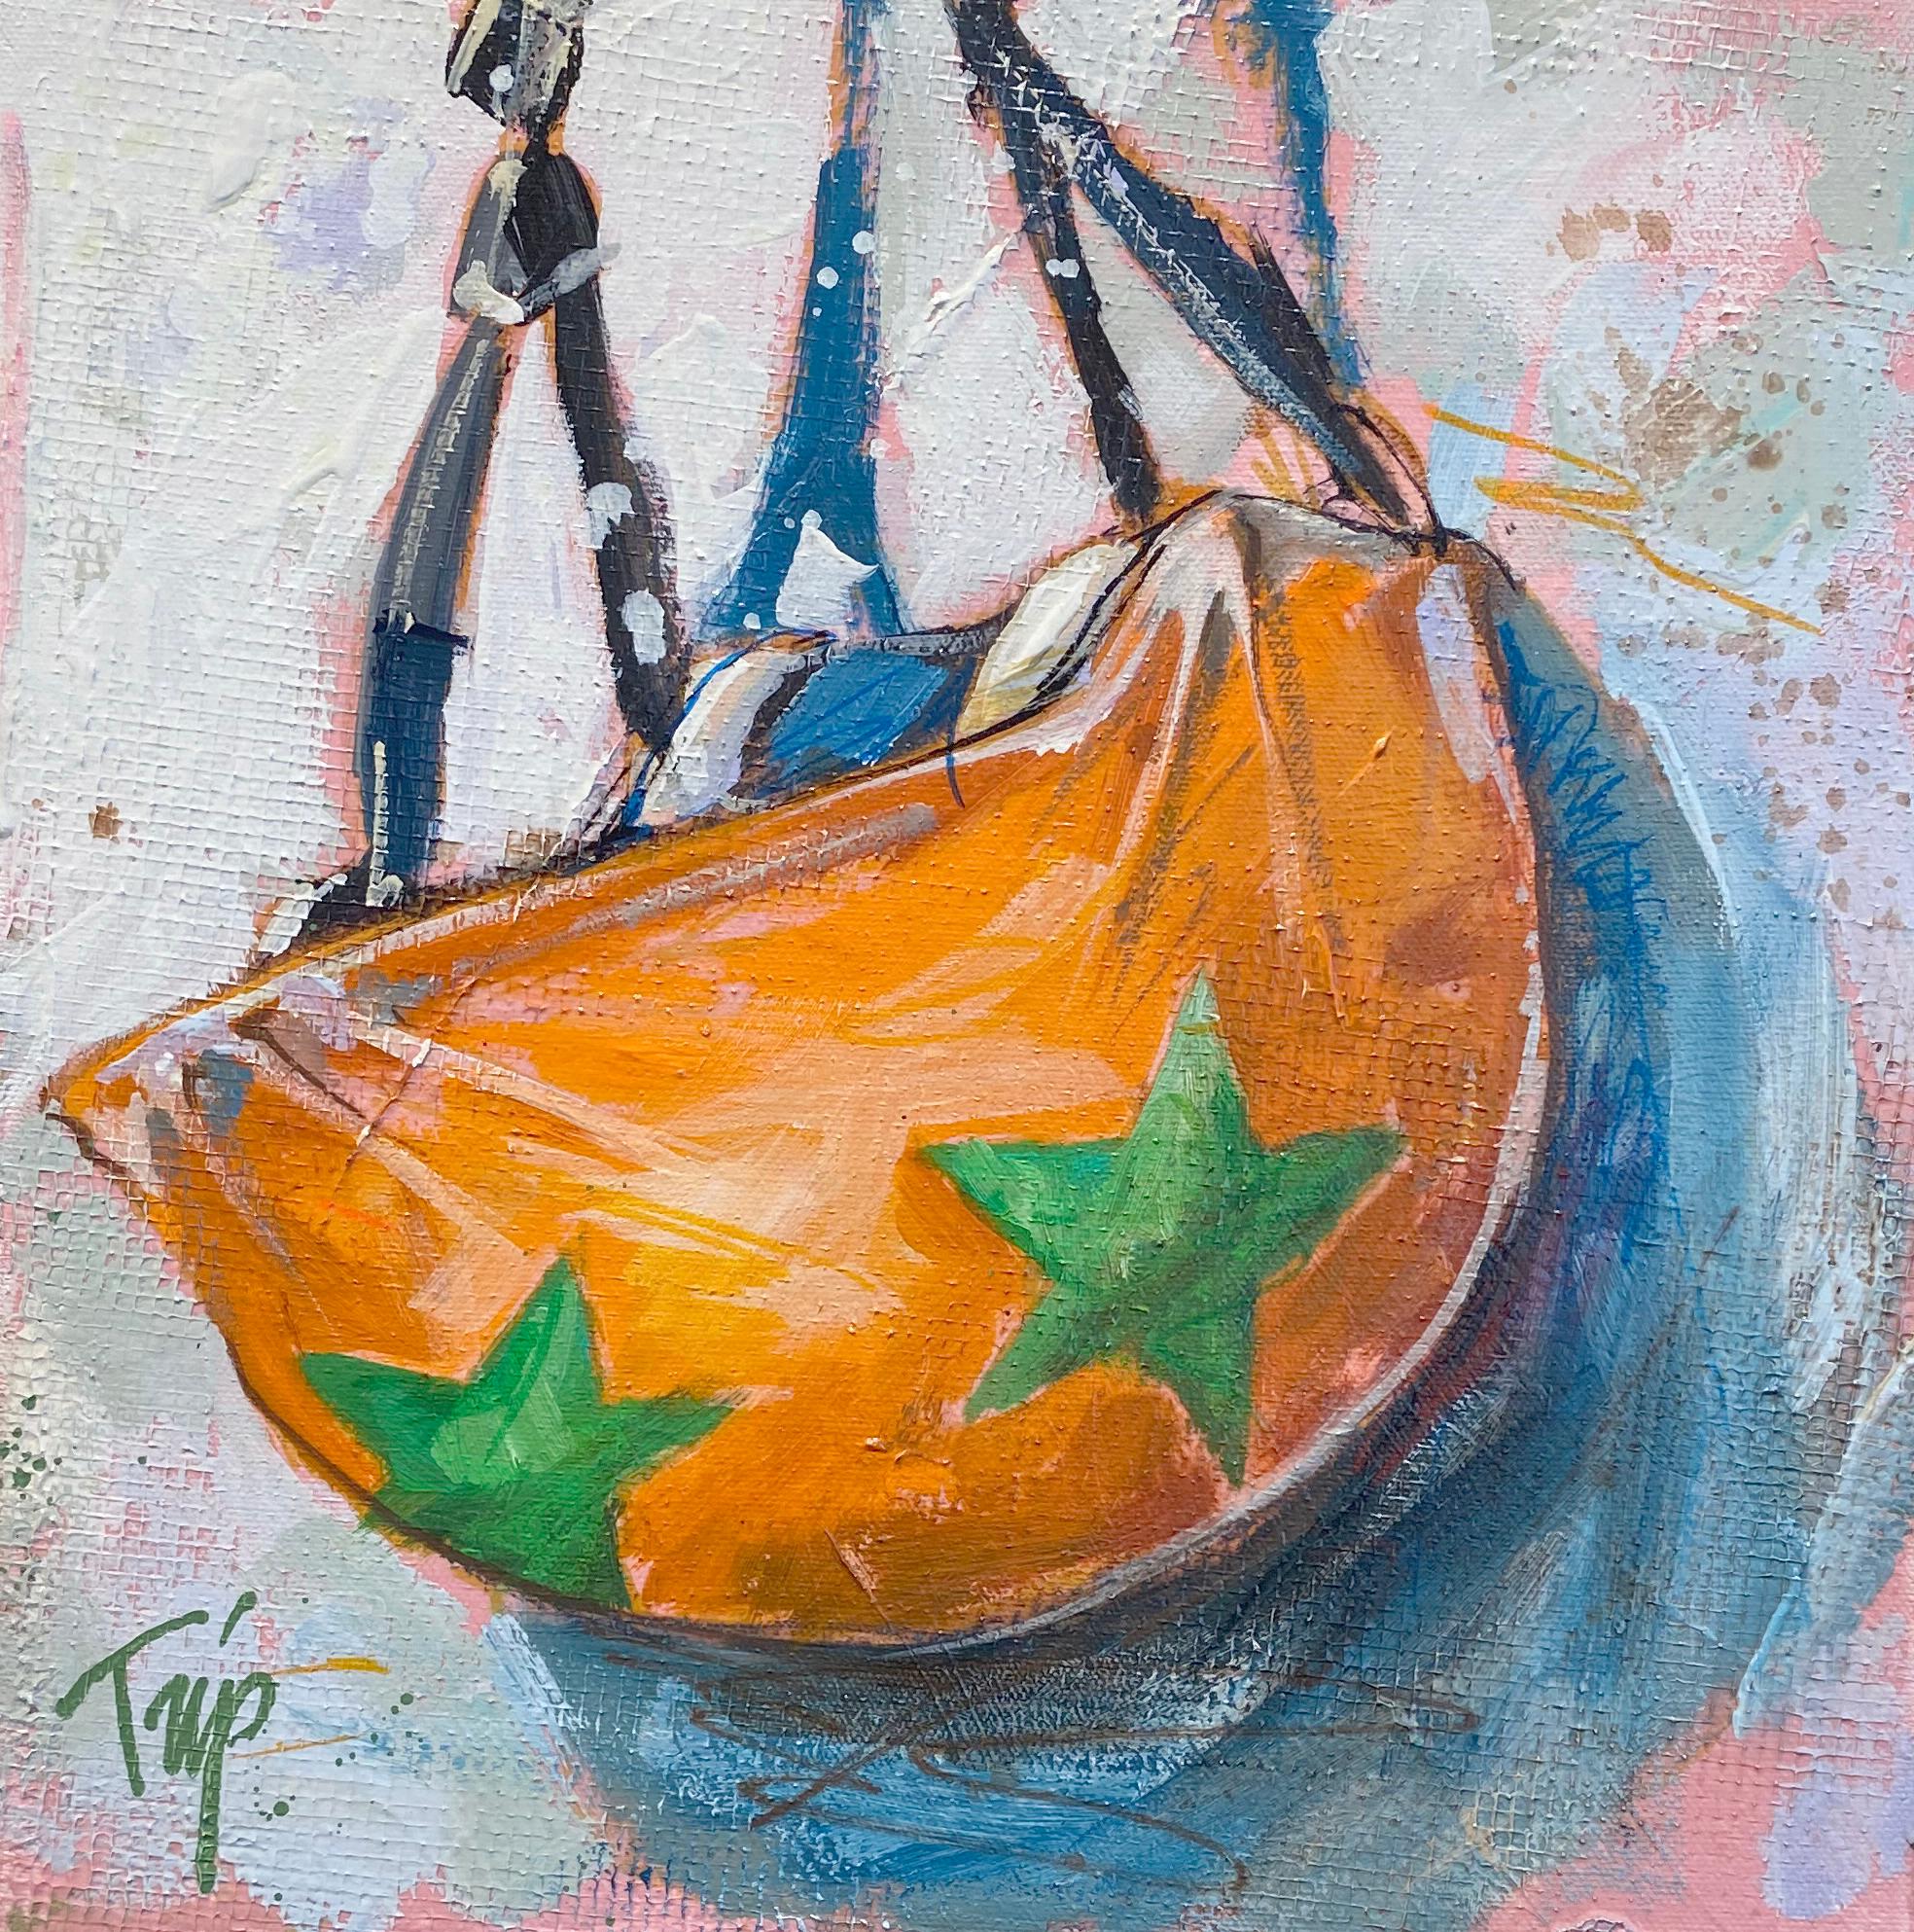 Dieses abstrakte Werk, "Orange Star Head", ist ein 12x12 Acrylgemälde auf Leinwand, das einen einzelnen orangefarbenen Jockeyhelm mit einem grünen Sternenmuster zeigt. Parks charakteristische rosafarbene Untermalung ist durch die vielen Schichten